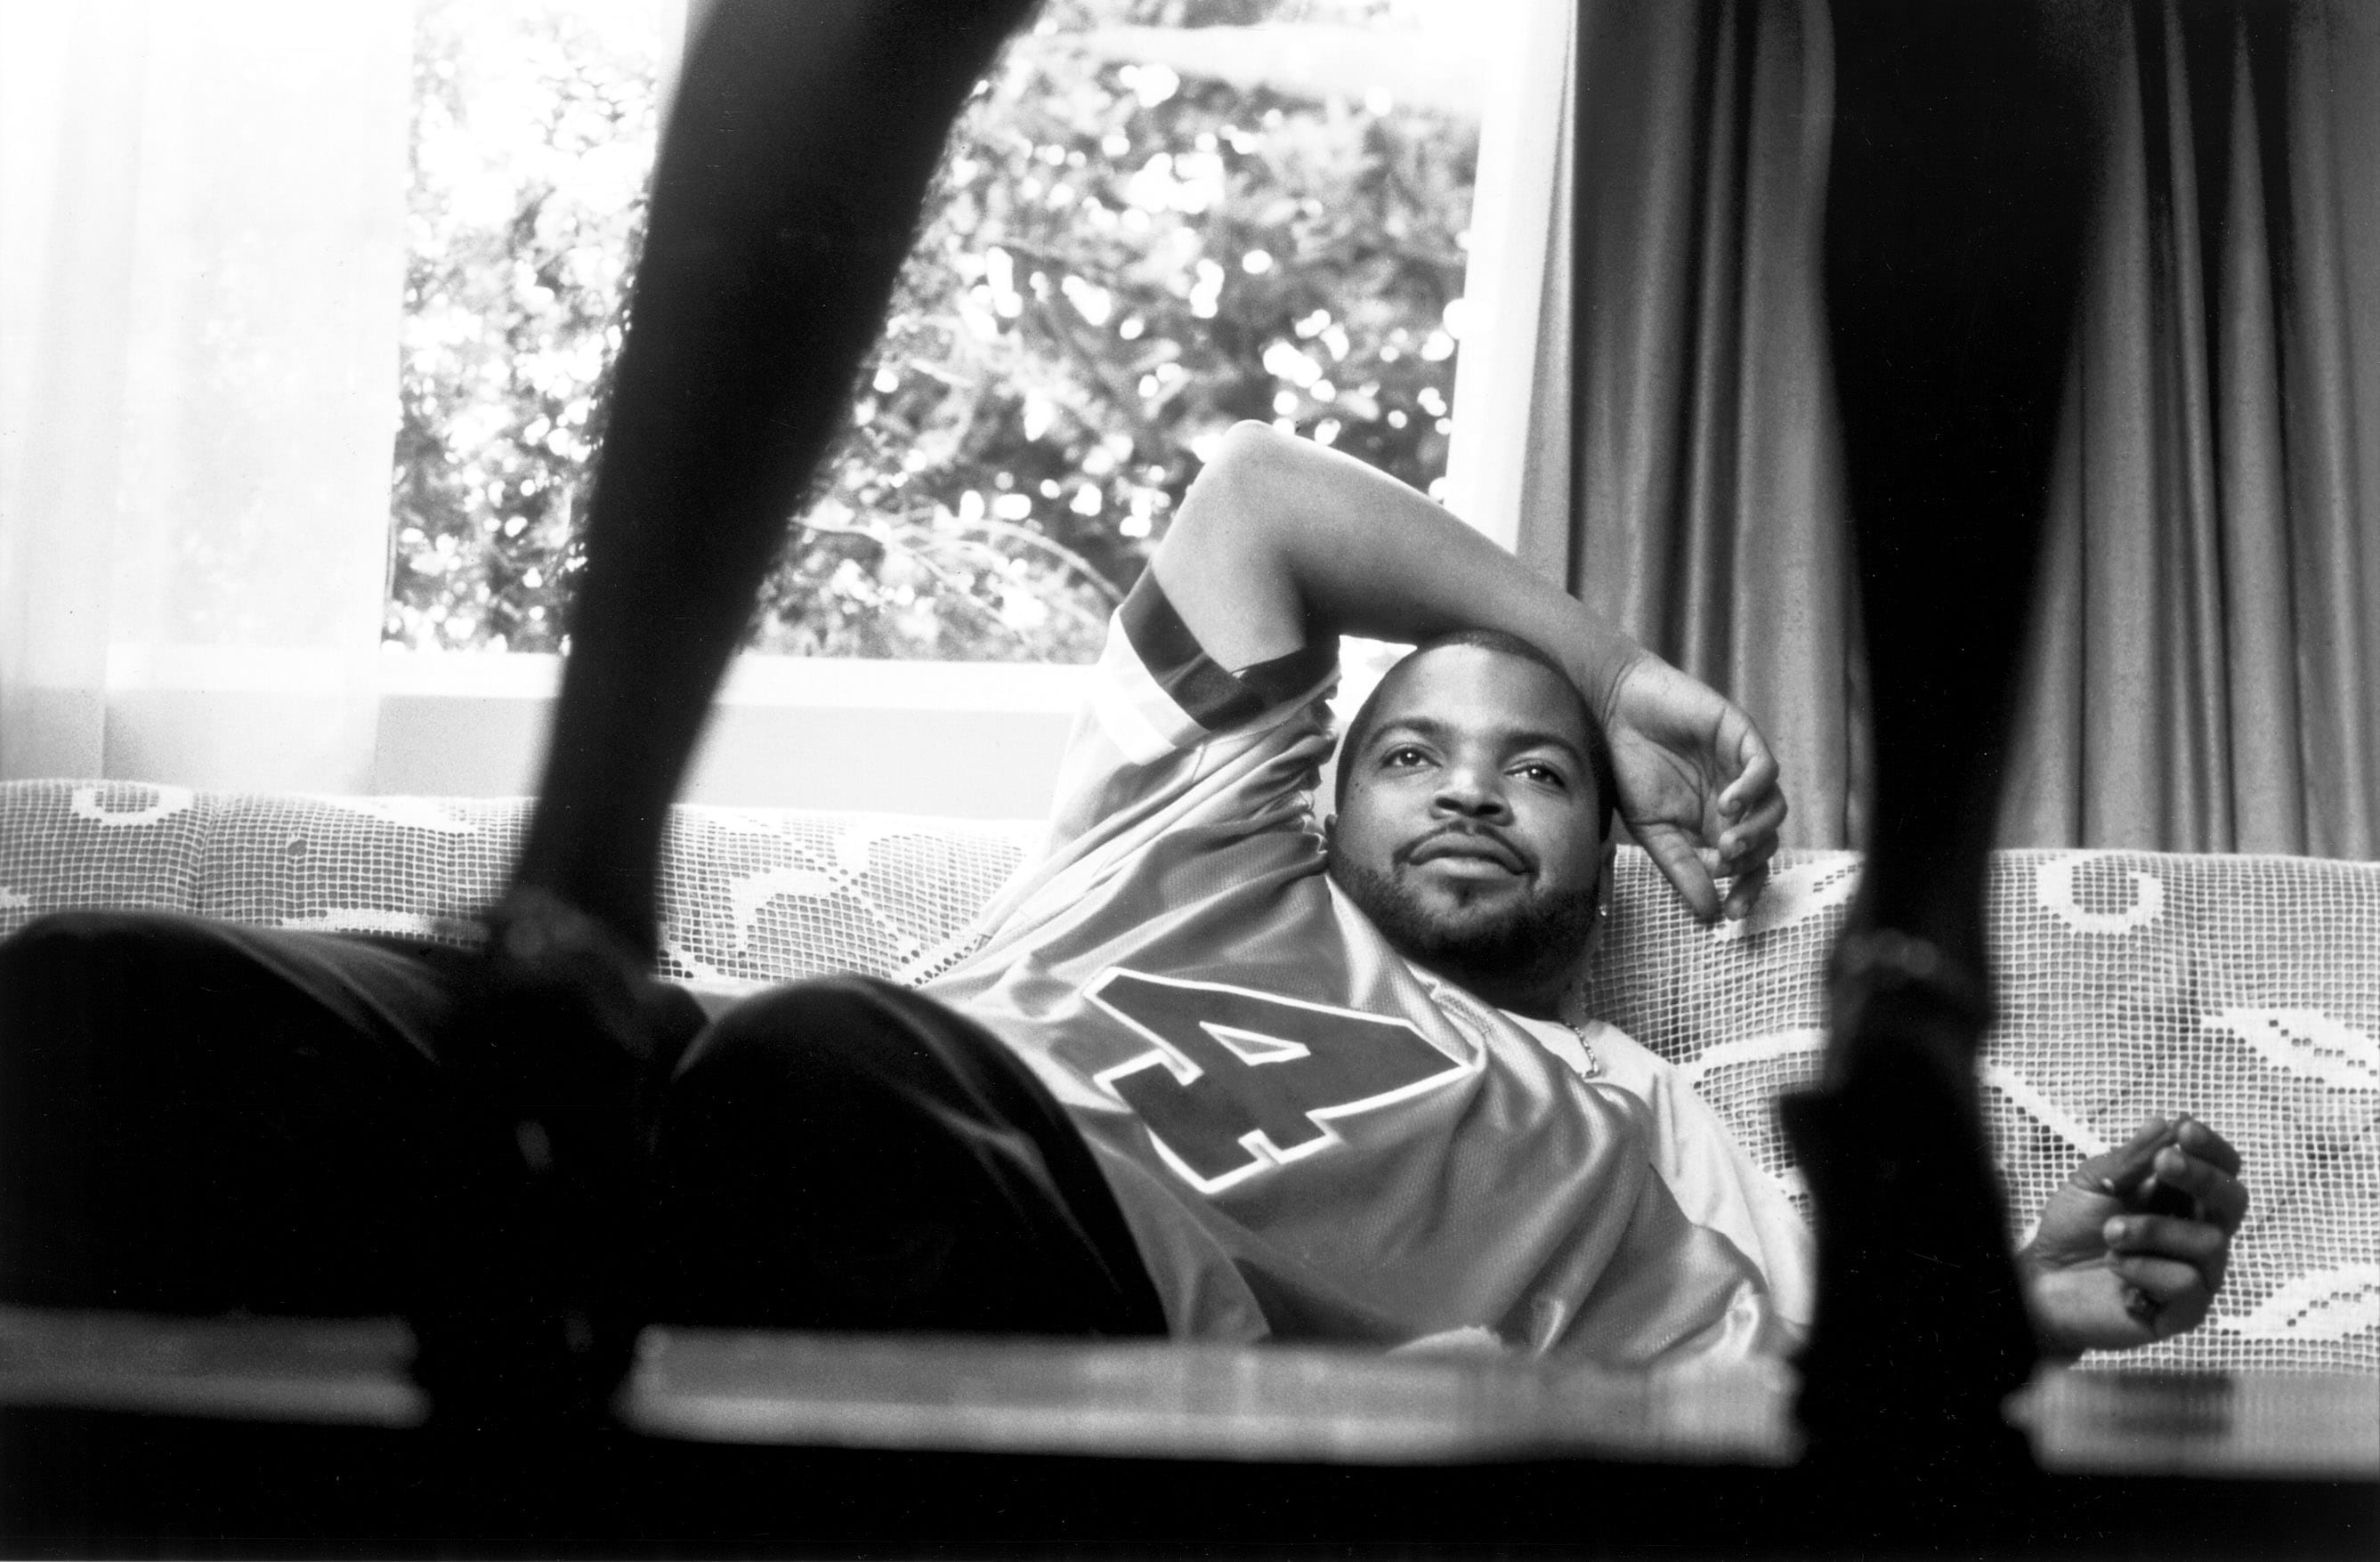 Ice Cube non è uno dei migliori rapper di tutti i tempi solo perché è uno dei membri dei N.W.A., il gruppo che ha dato il via al rap – con Dr. Dre, Eazy-E, DJ Yella e MC Ren. Ice Cube ha iniziato la carriera da solista nel 1989, carriera incentrata sul rap e sulla recitazione. Dal primo album AmeriKKKa’s Most Wanted a recitare nel film Straight Outta Compton, il filmo autobiografico dei N.W.A, Ice Cube è una leggenda vivente nella storia del rap.